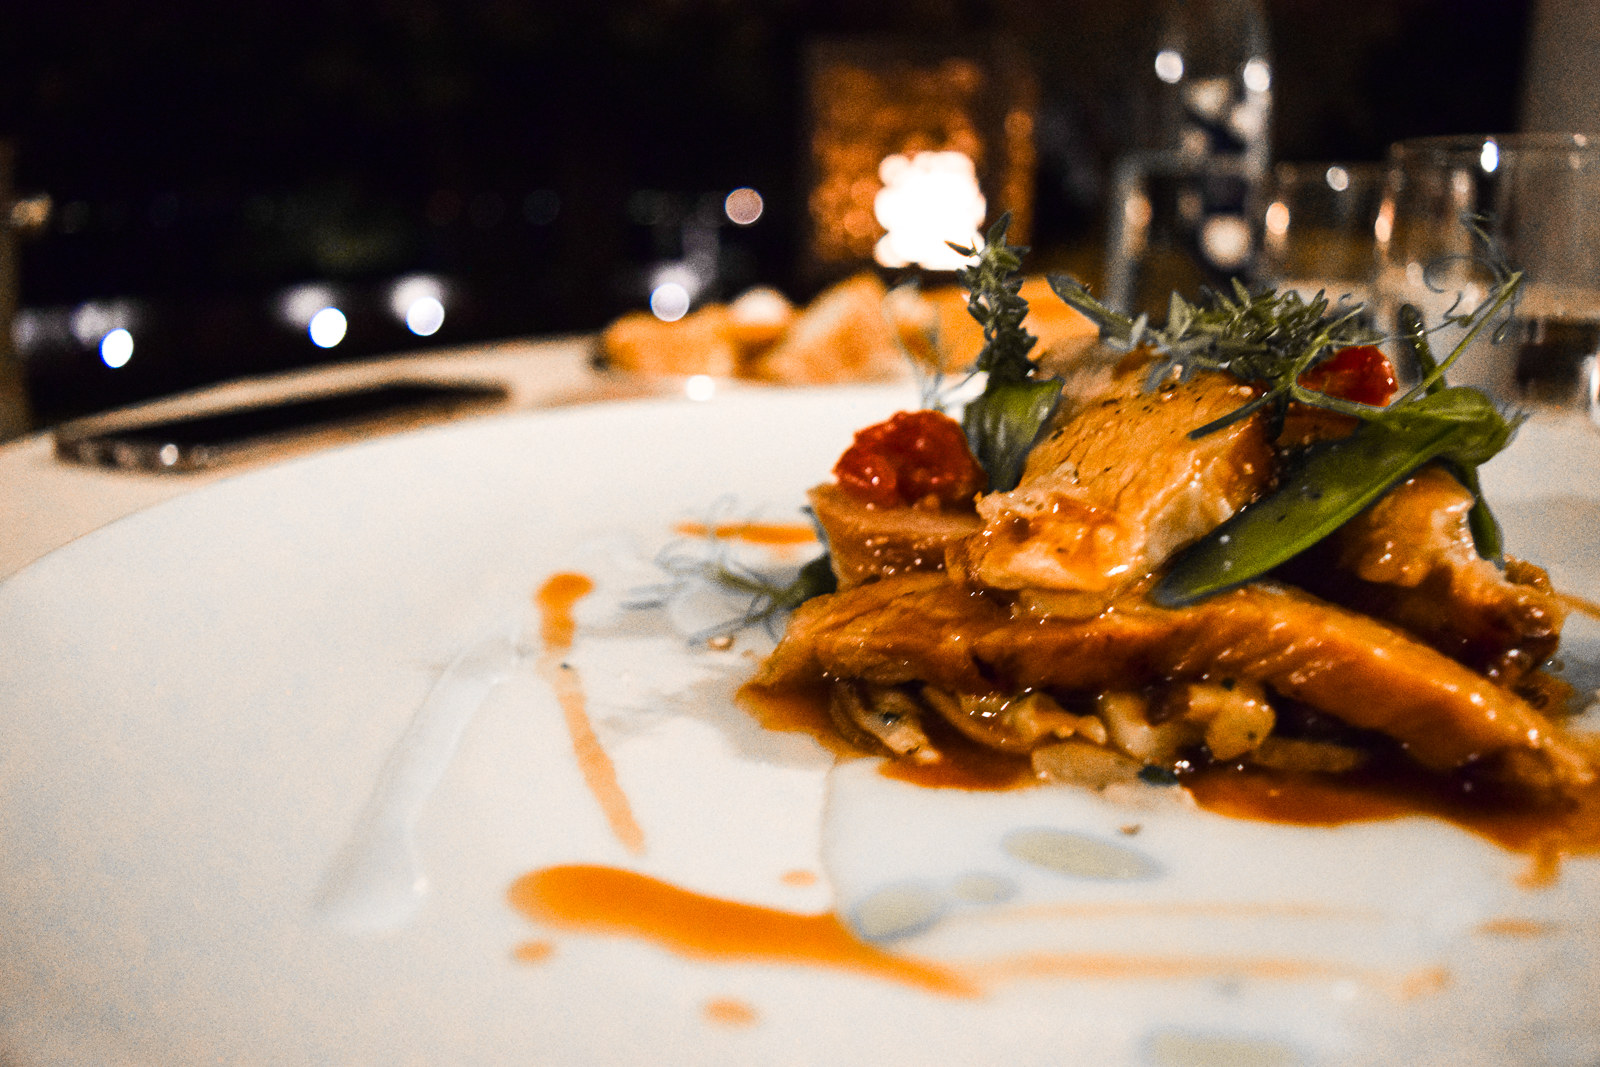 Aperitivo and Fine Dining at a Lake Maggiore Restaurant at Grand Hotel Majestic la beola cena aperitivo la terrazza veal vitello